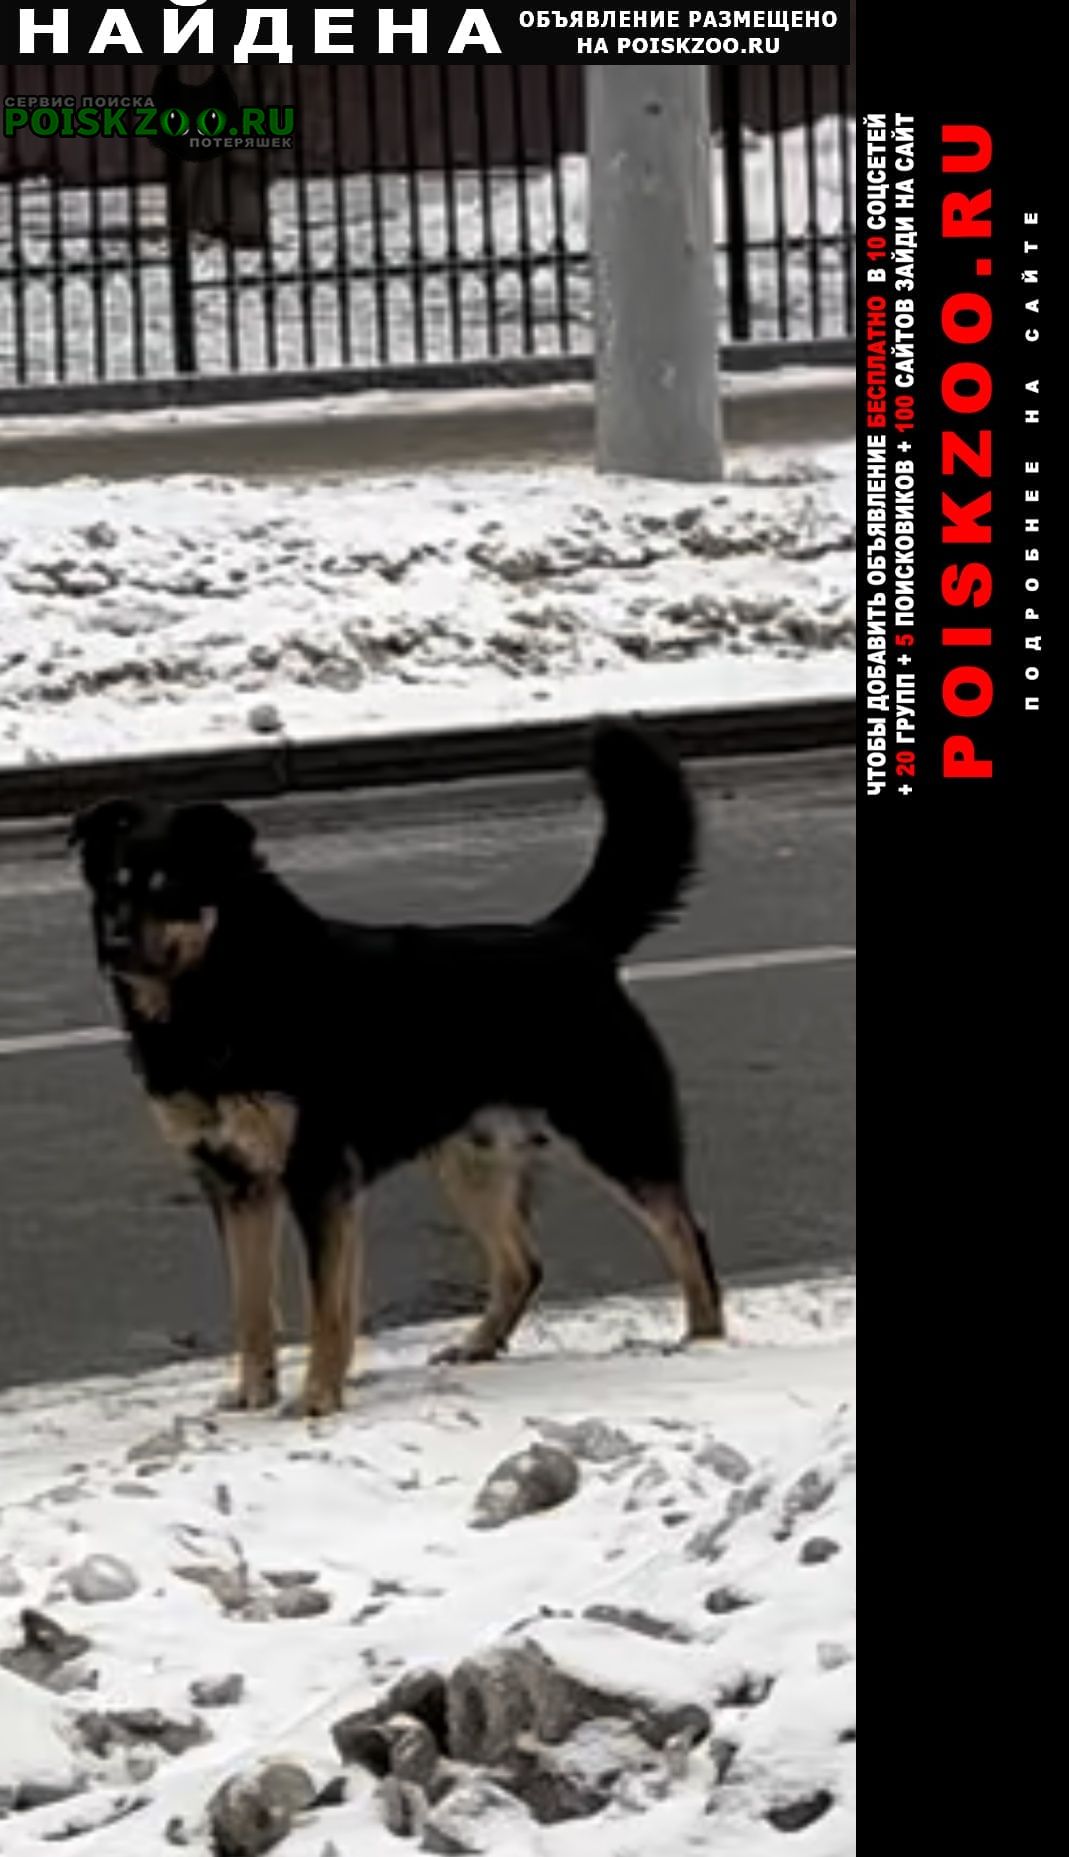 Москва Найдена собака несколько дней бегает около мцк